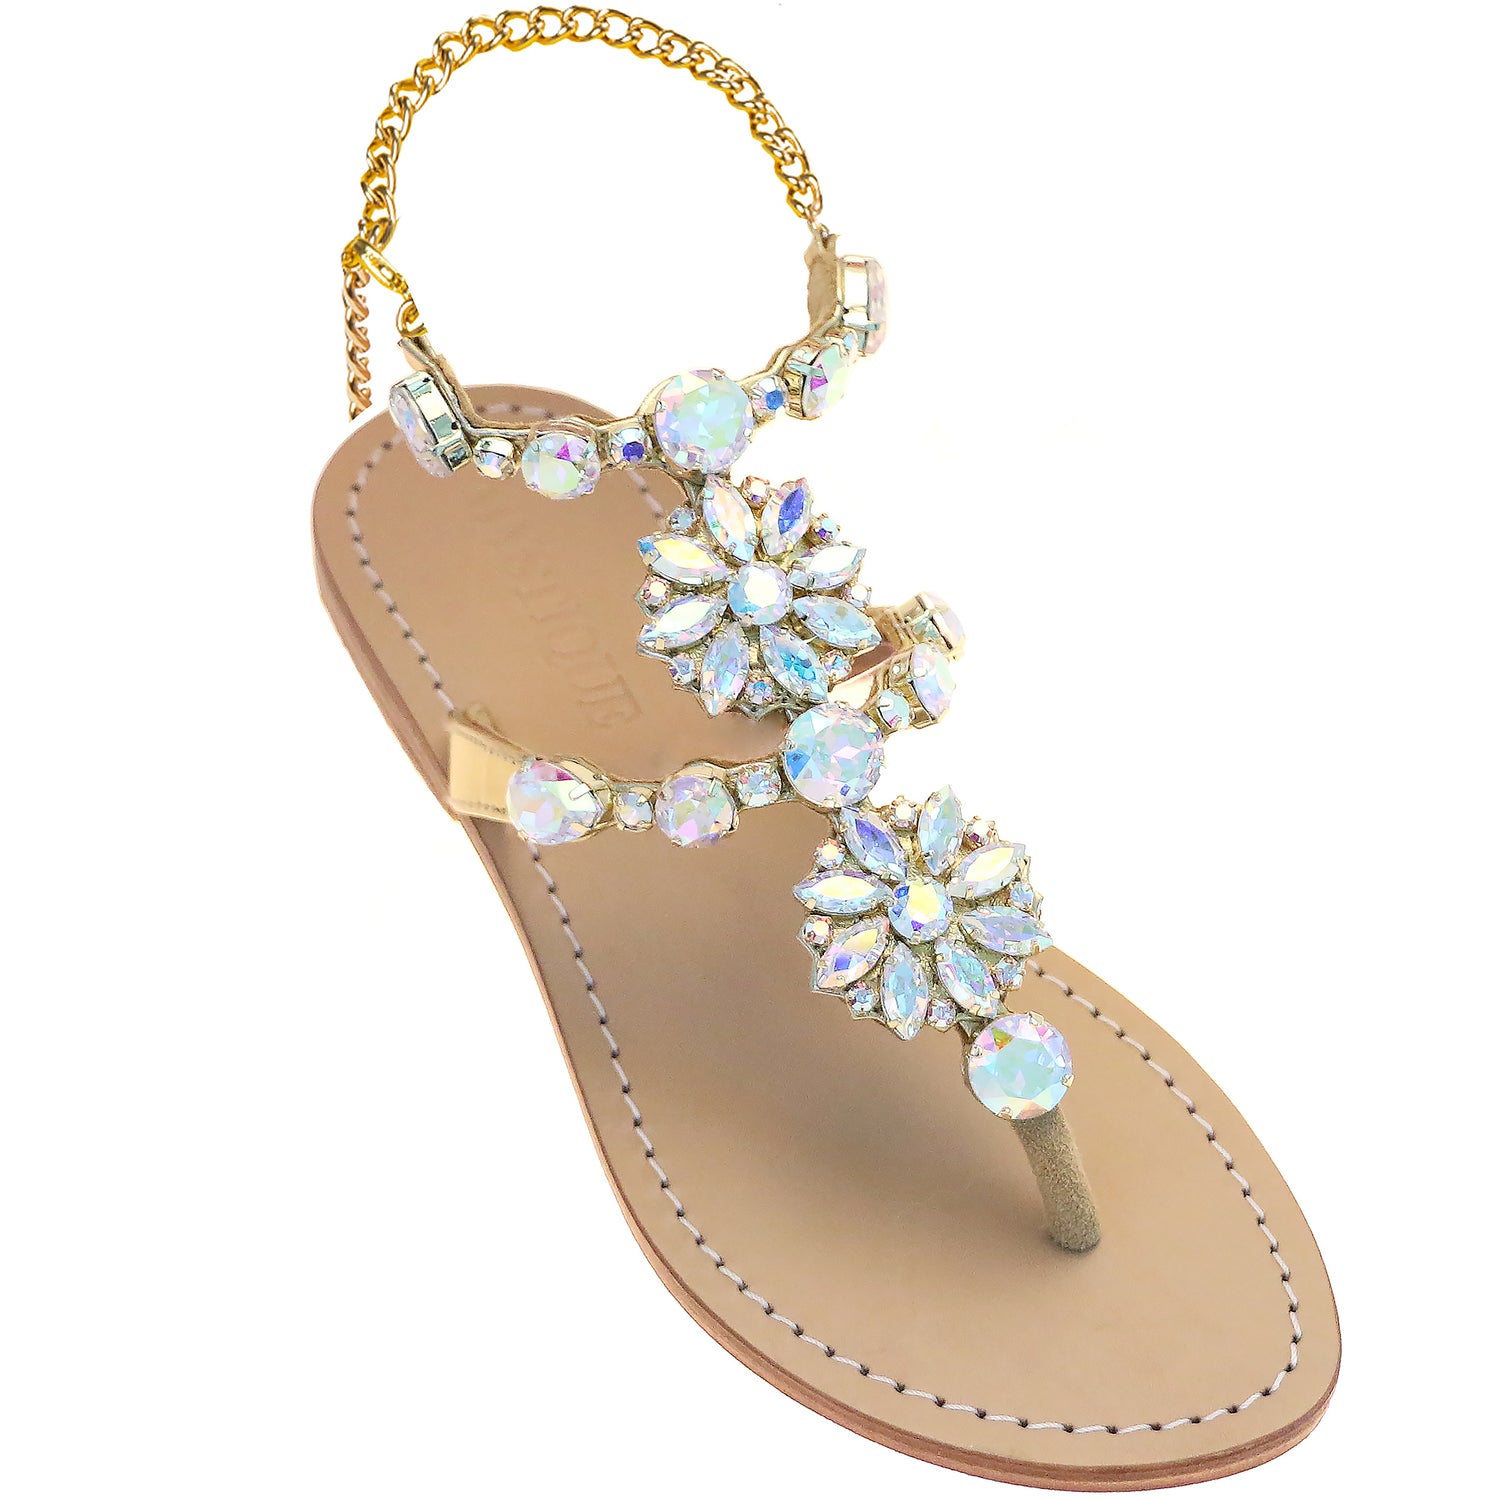 Amelia Island - Women's Gold Ankle Strap Sandals | Mystique Sandals